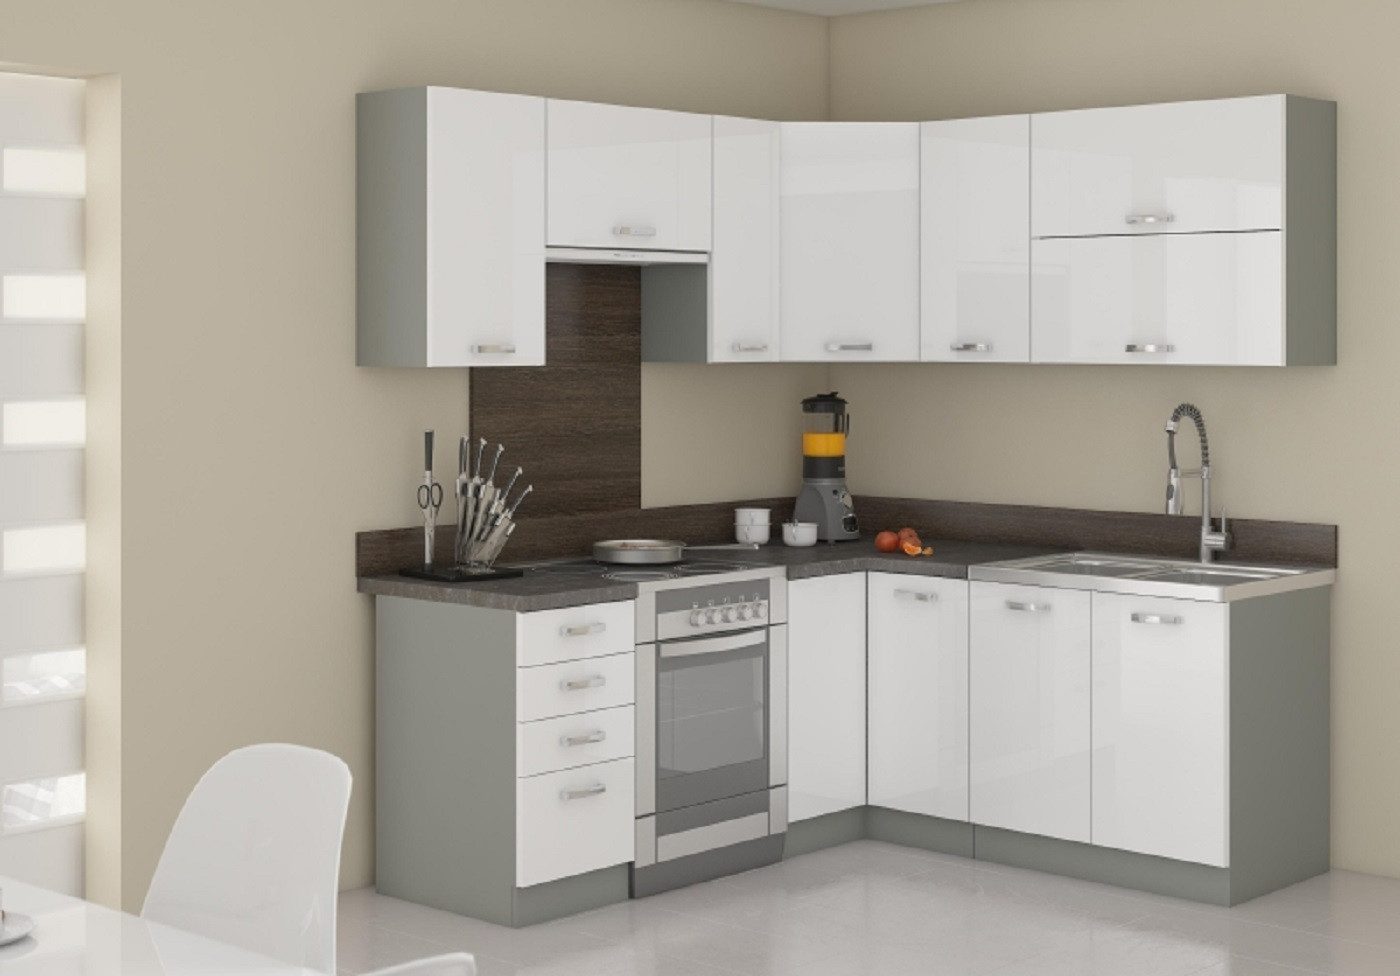 ROYAL24_MARKT Winkelküche - Verleihen Sie Ihrem Zuhause einen Hauch von Luxus, Edle Stoffe - Schickes Design - Top Verarbeitung.